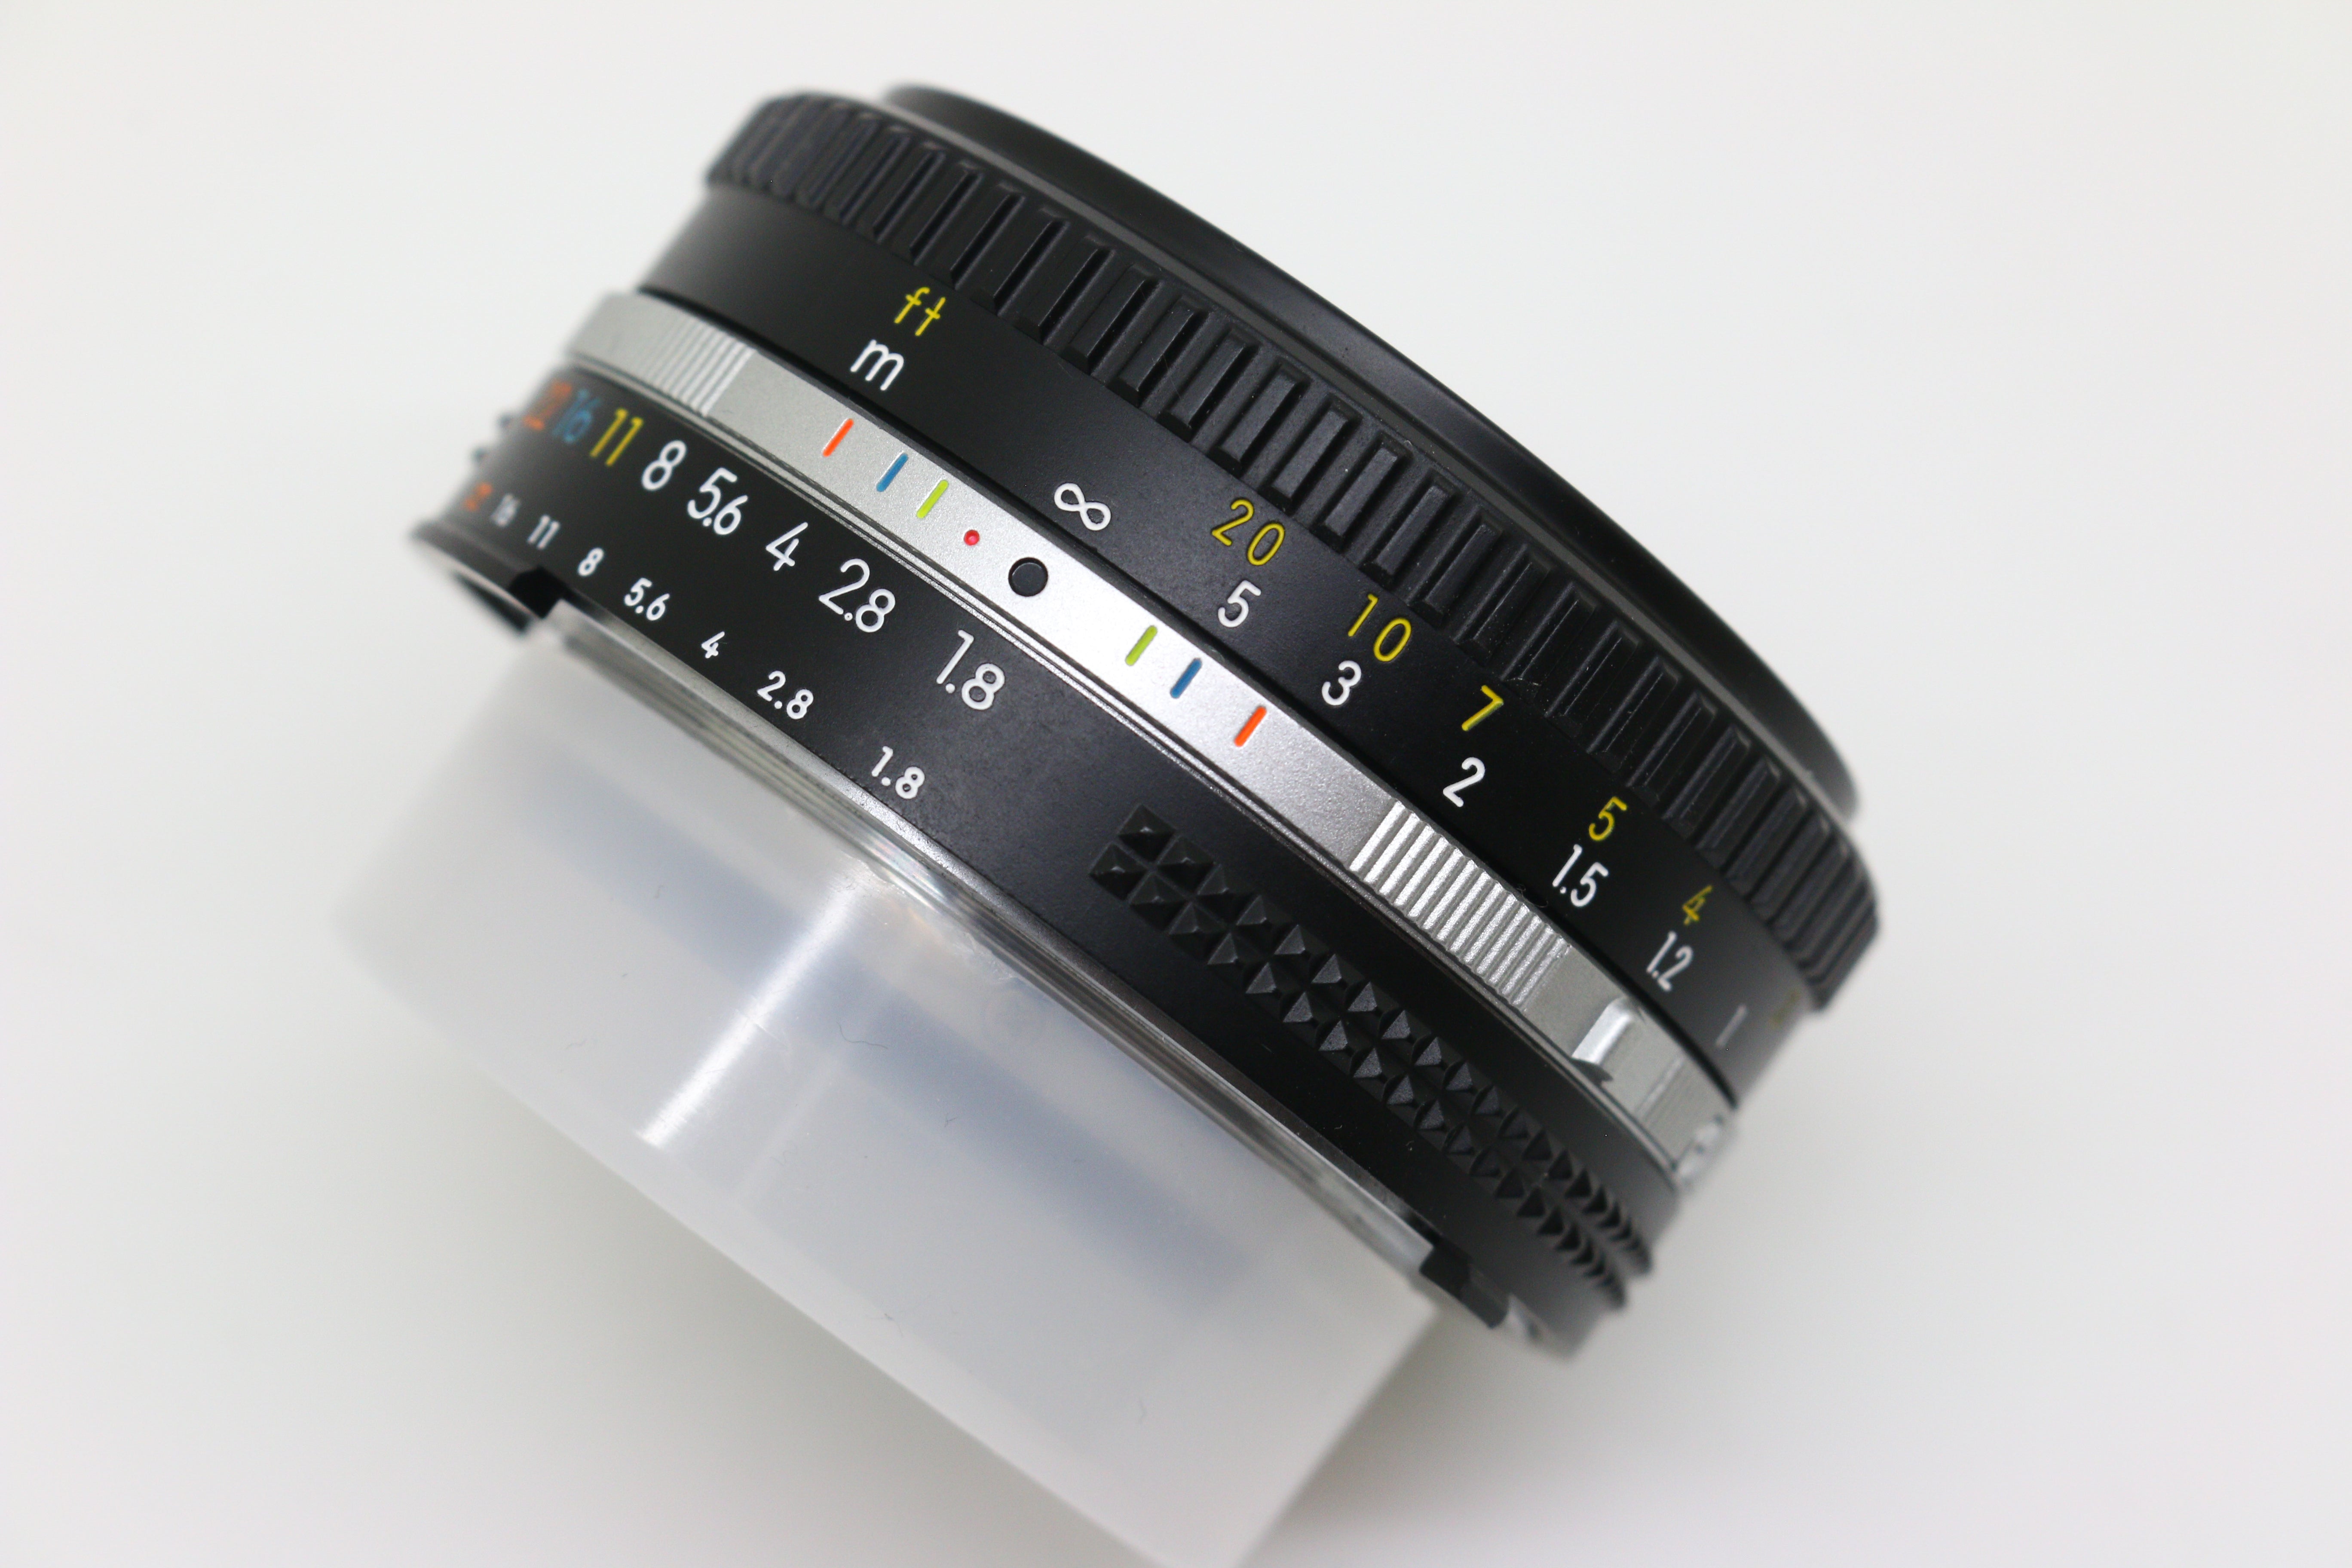 Nikon Nikkor 50mm F/1.8 AI-S Lens (Boxed)